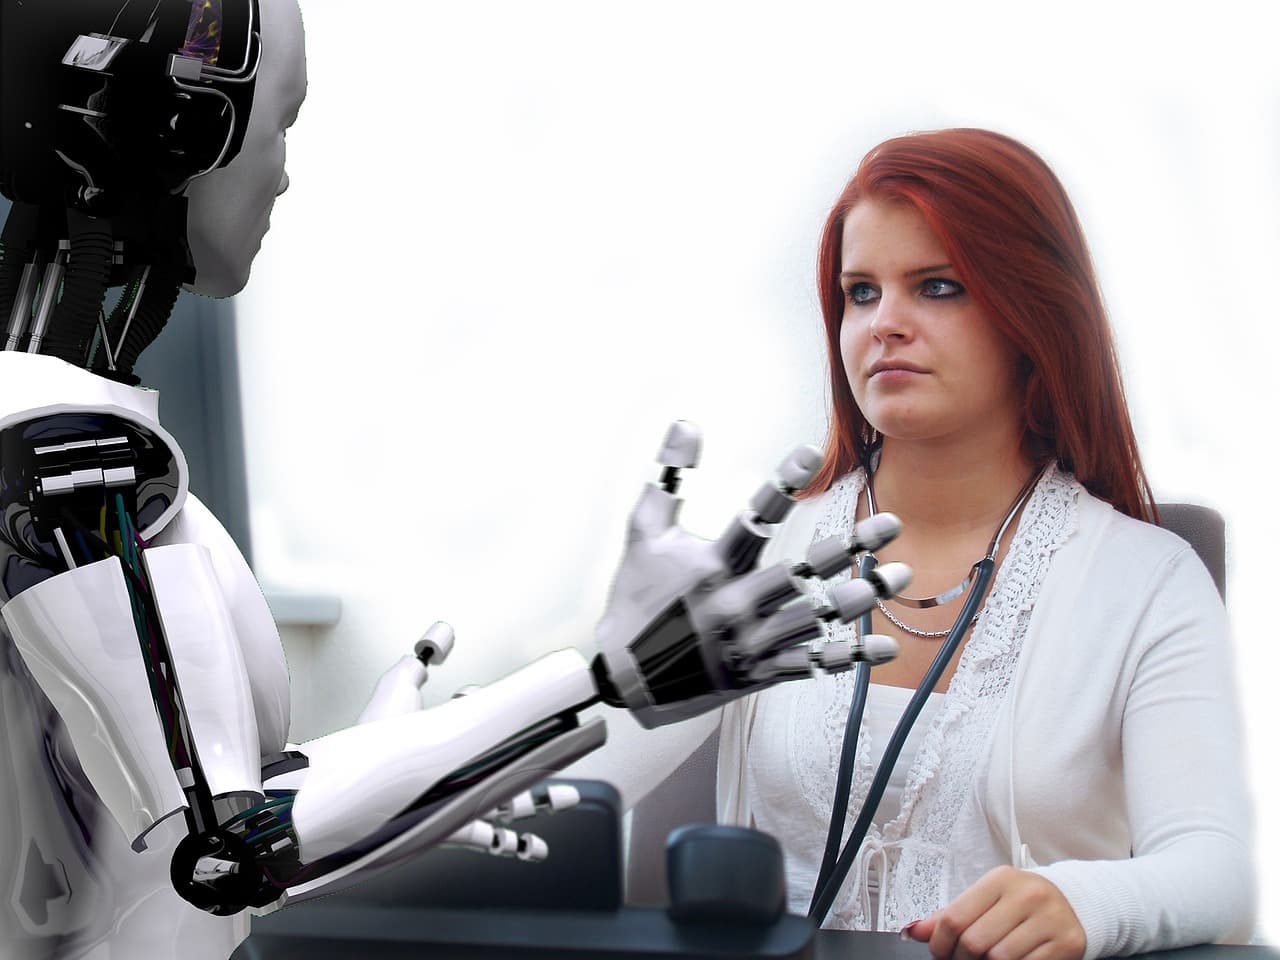 Az emberek többsége jobban bízik a robotokban, mint a főnökében